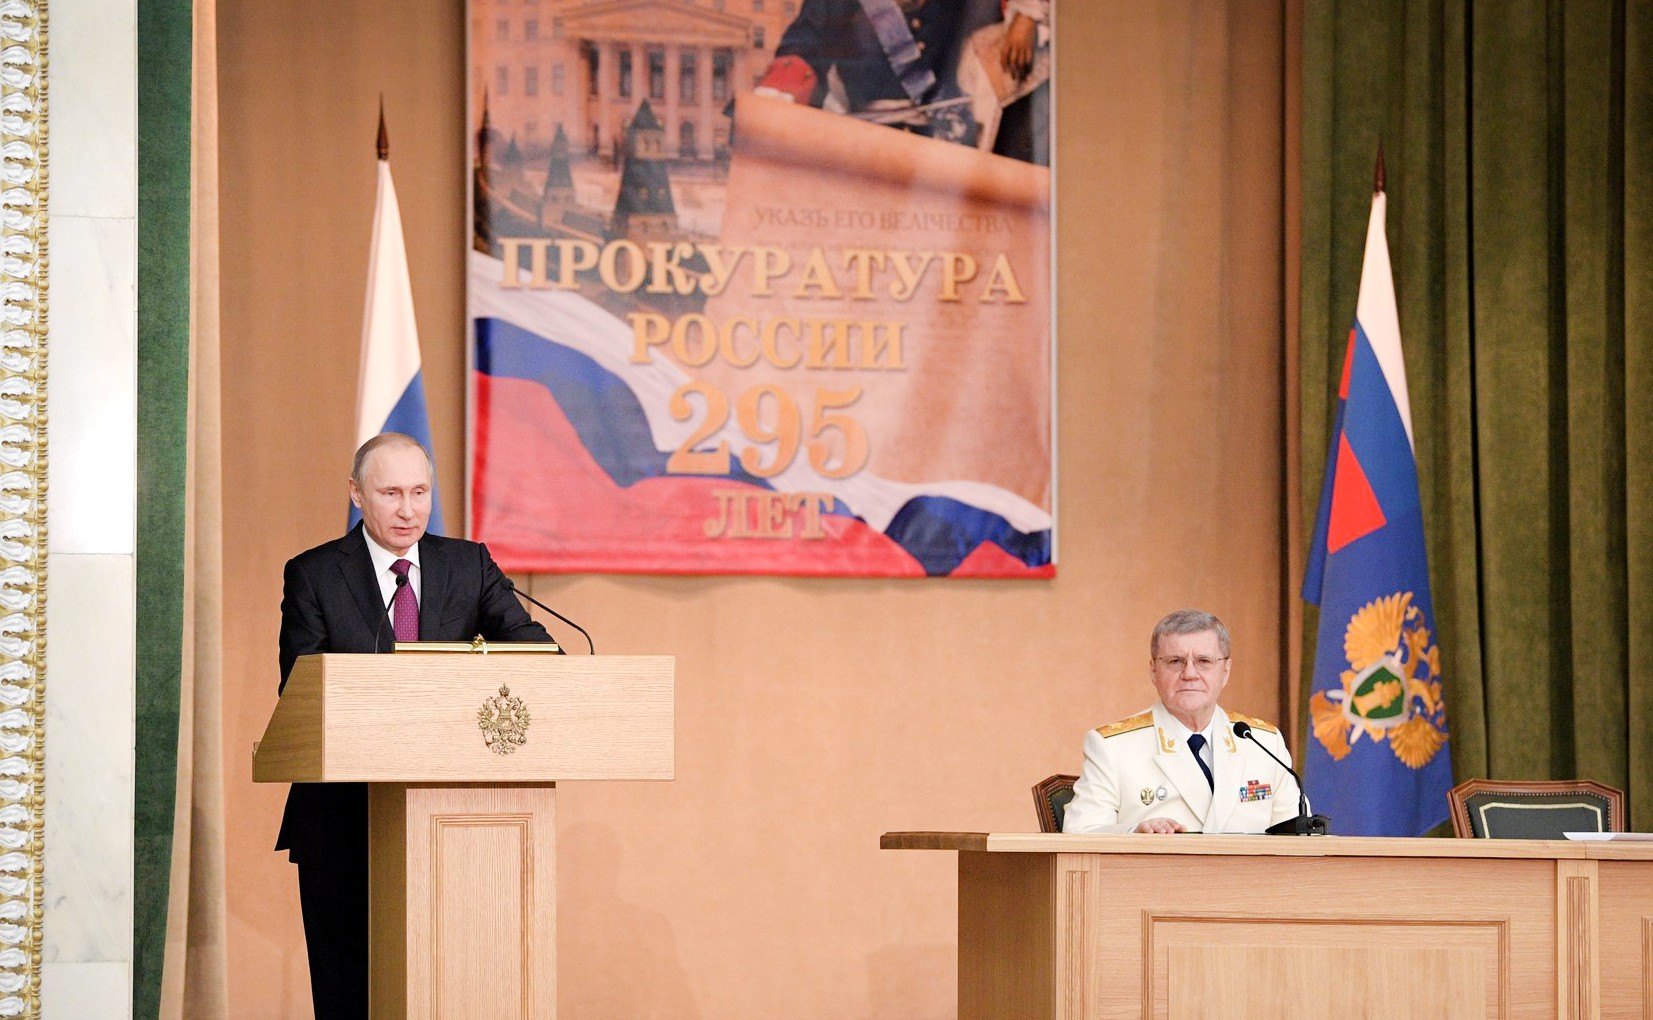 Владимир Путин выступает на заседании, посвященном 295-летию российской прокуратуры